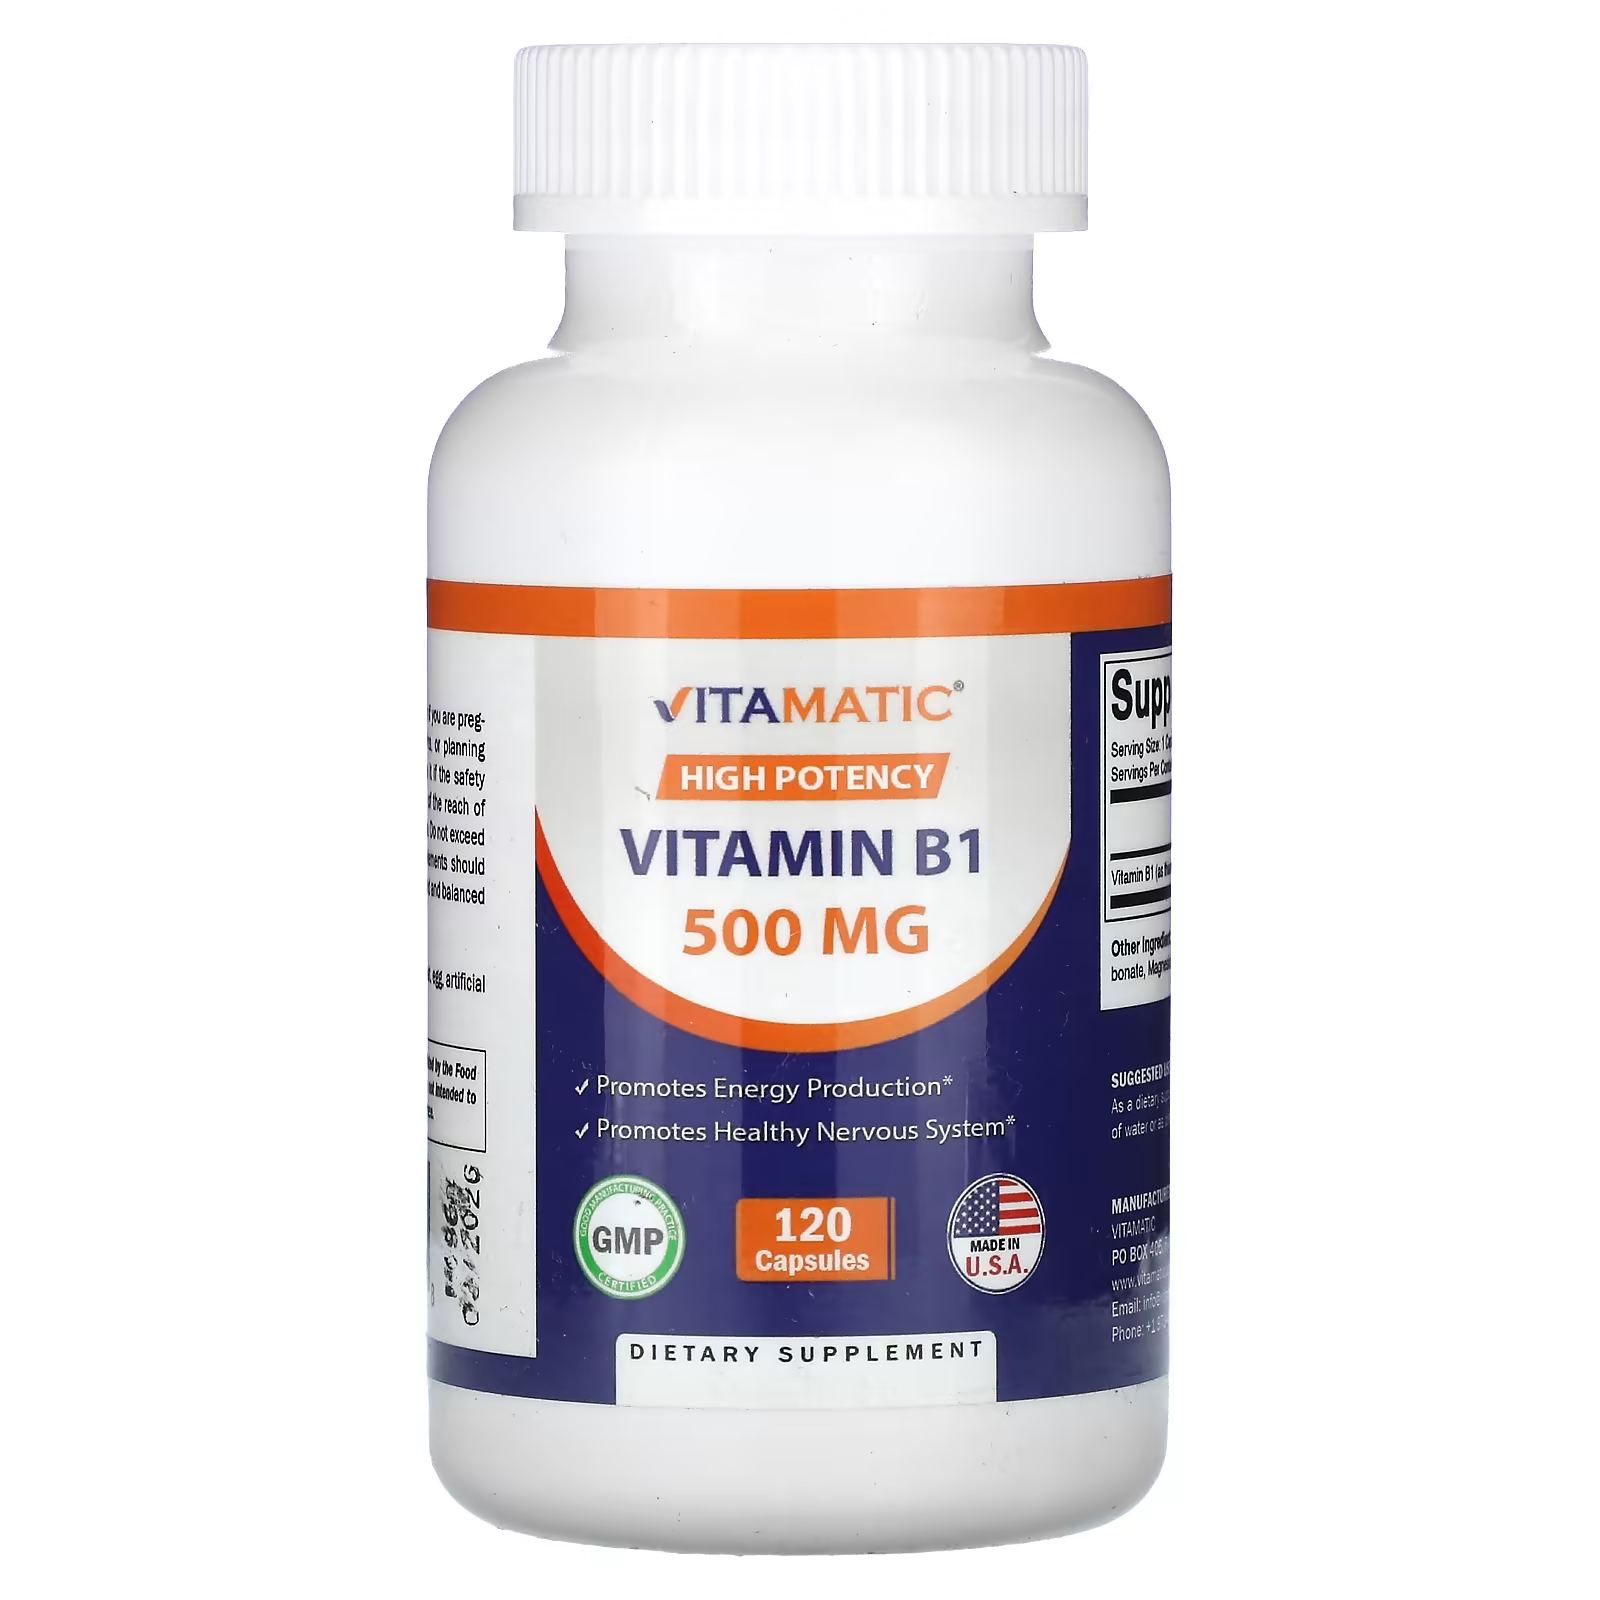 Vitamatic Высокоэффективный витамин B1 500 мг 120 капсул